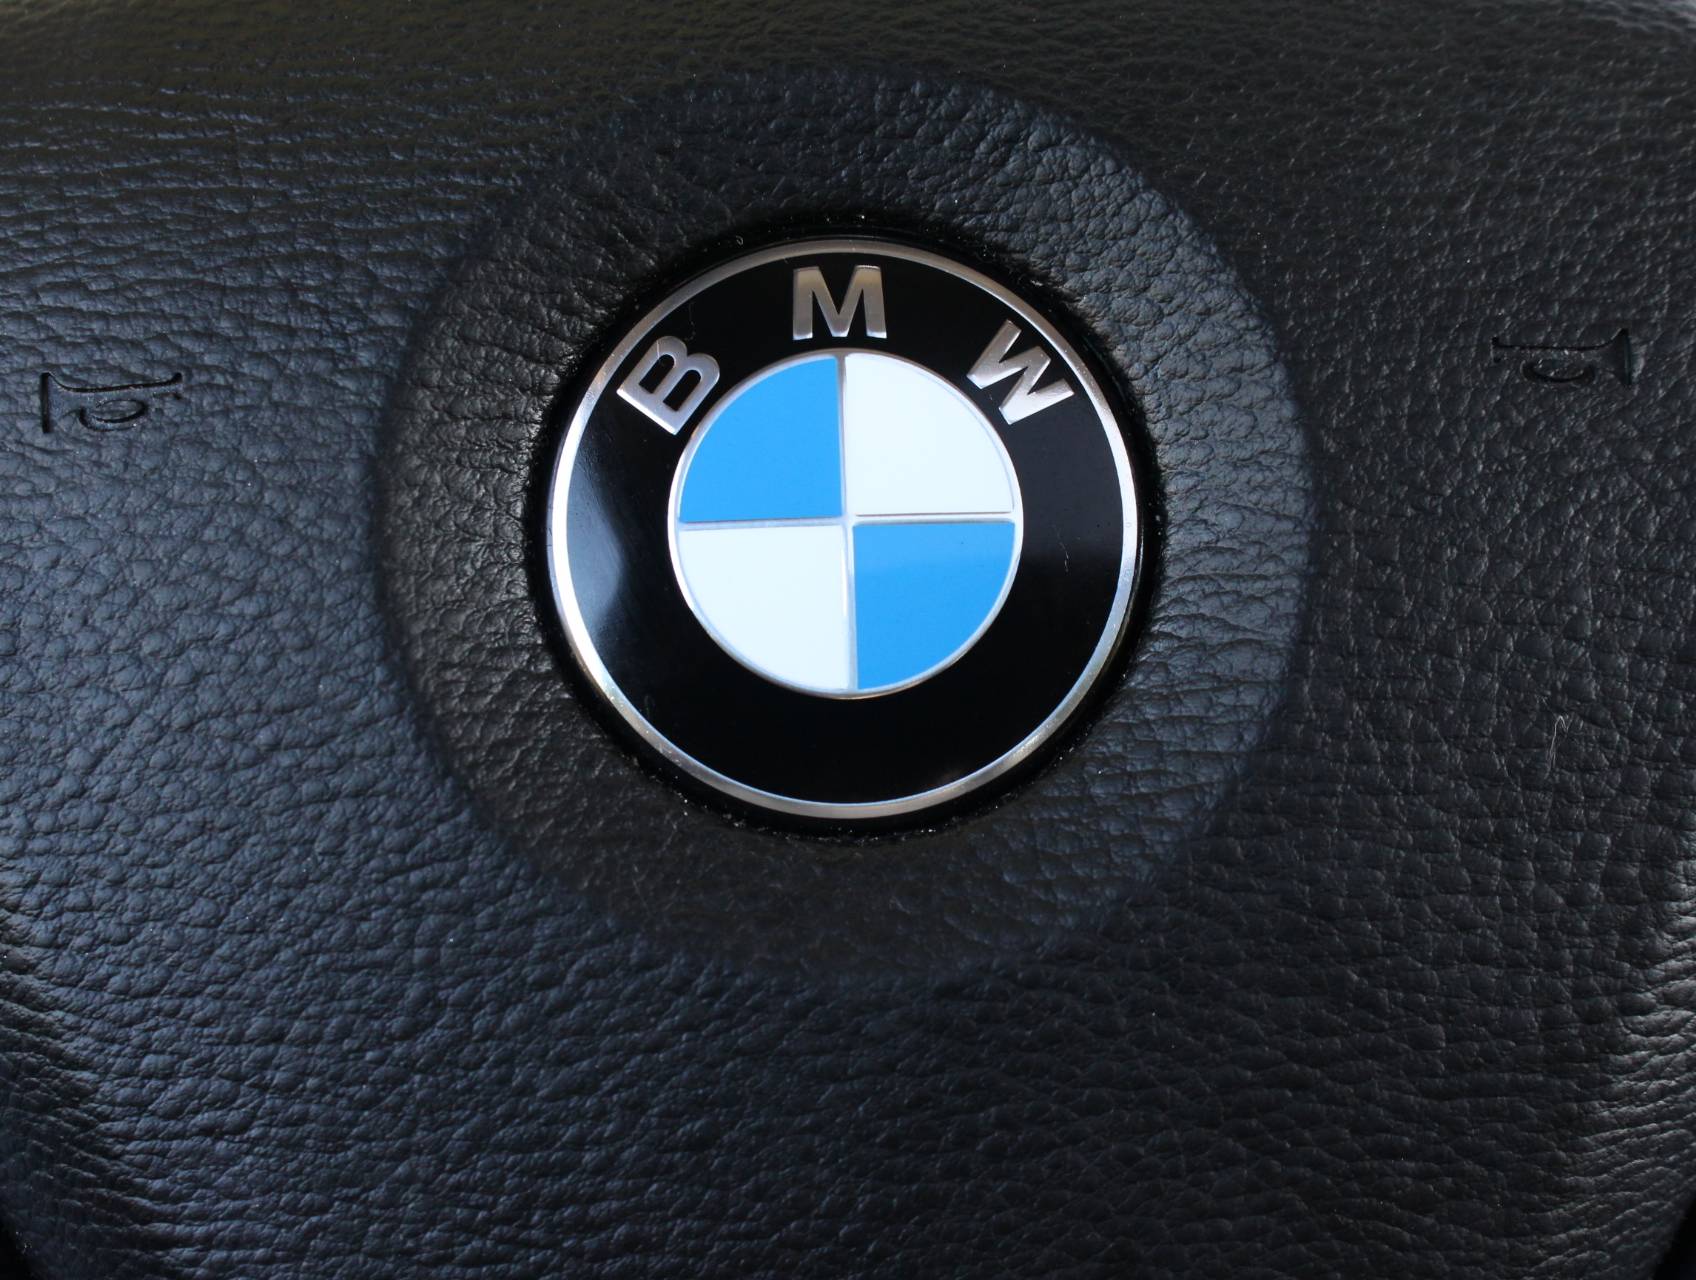 Florida Fine Cars - Used BMW X6 2015 MARGATE XDRIVE35I